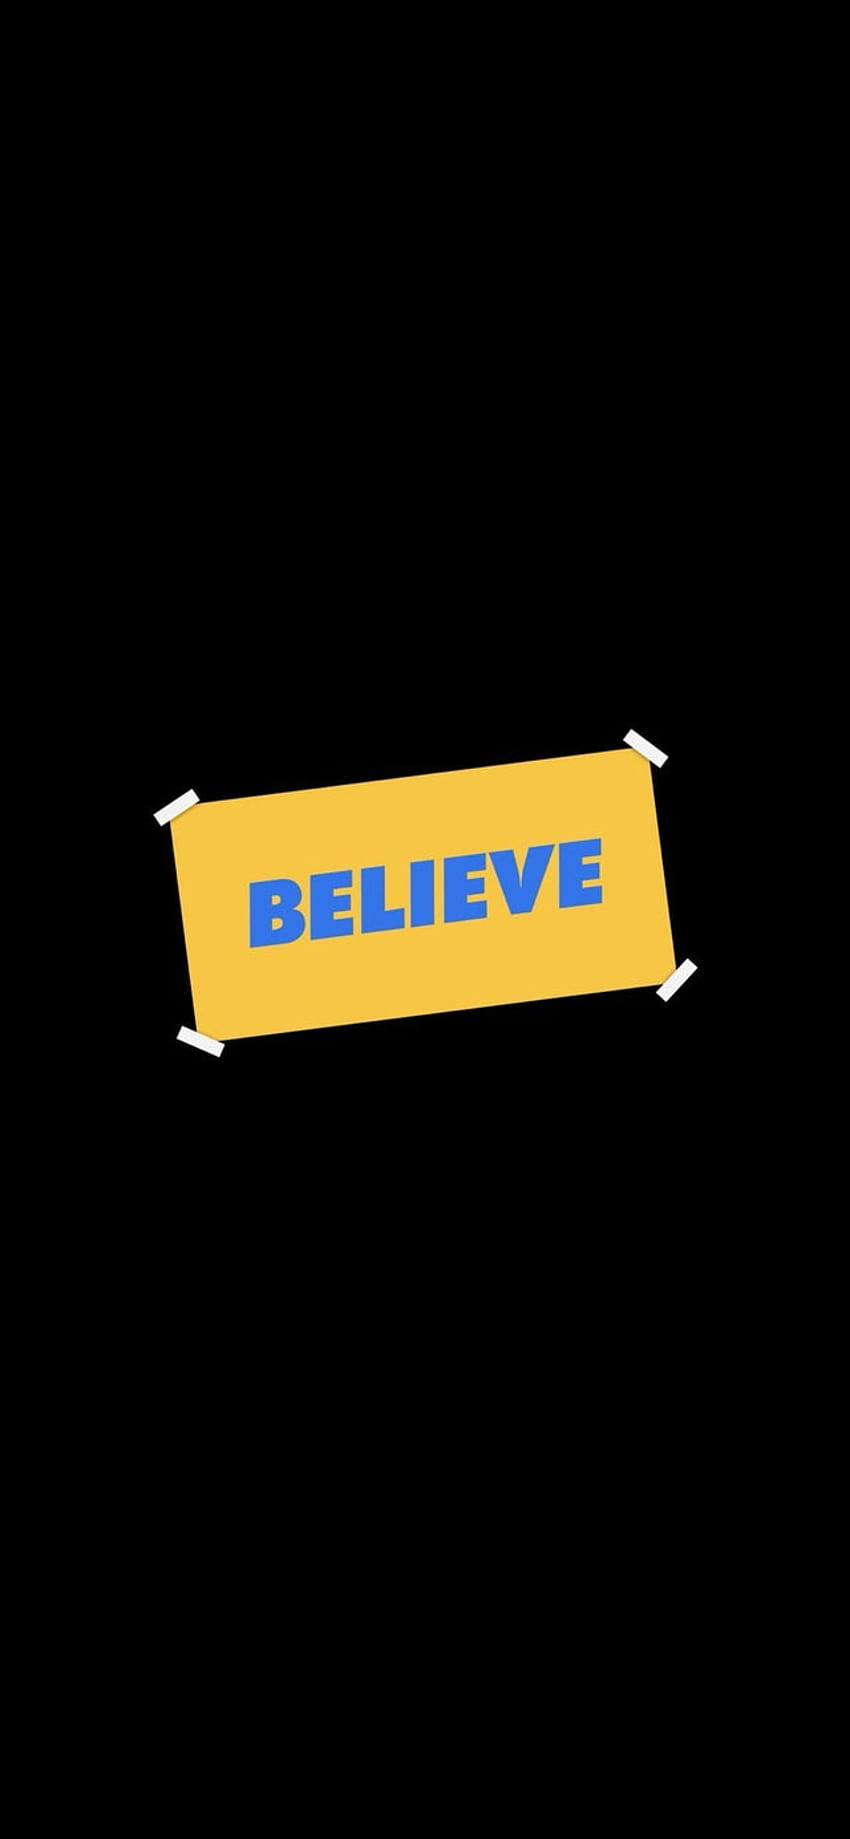 エミー賞の受賞を祝って、Ted Lasso フォントで簡単に作成した最小限の「Believe」!: TedLasso, ted lasso believe HD電話の壁紙